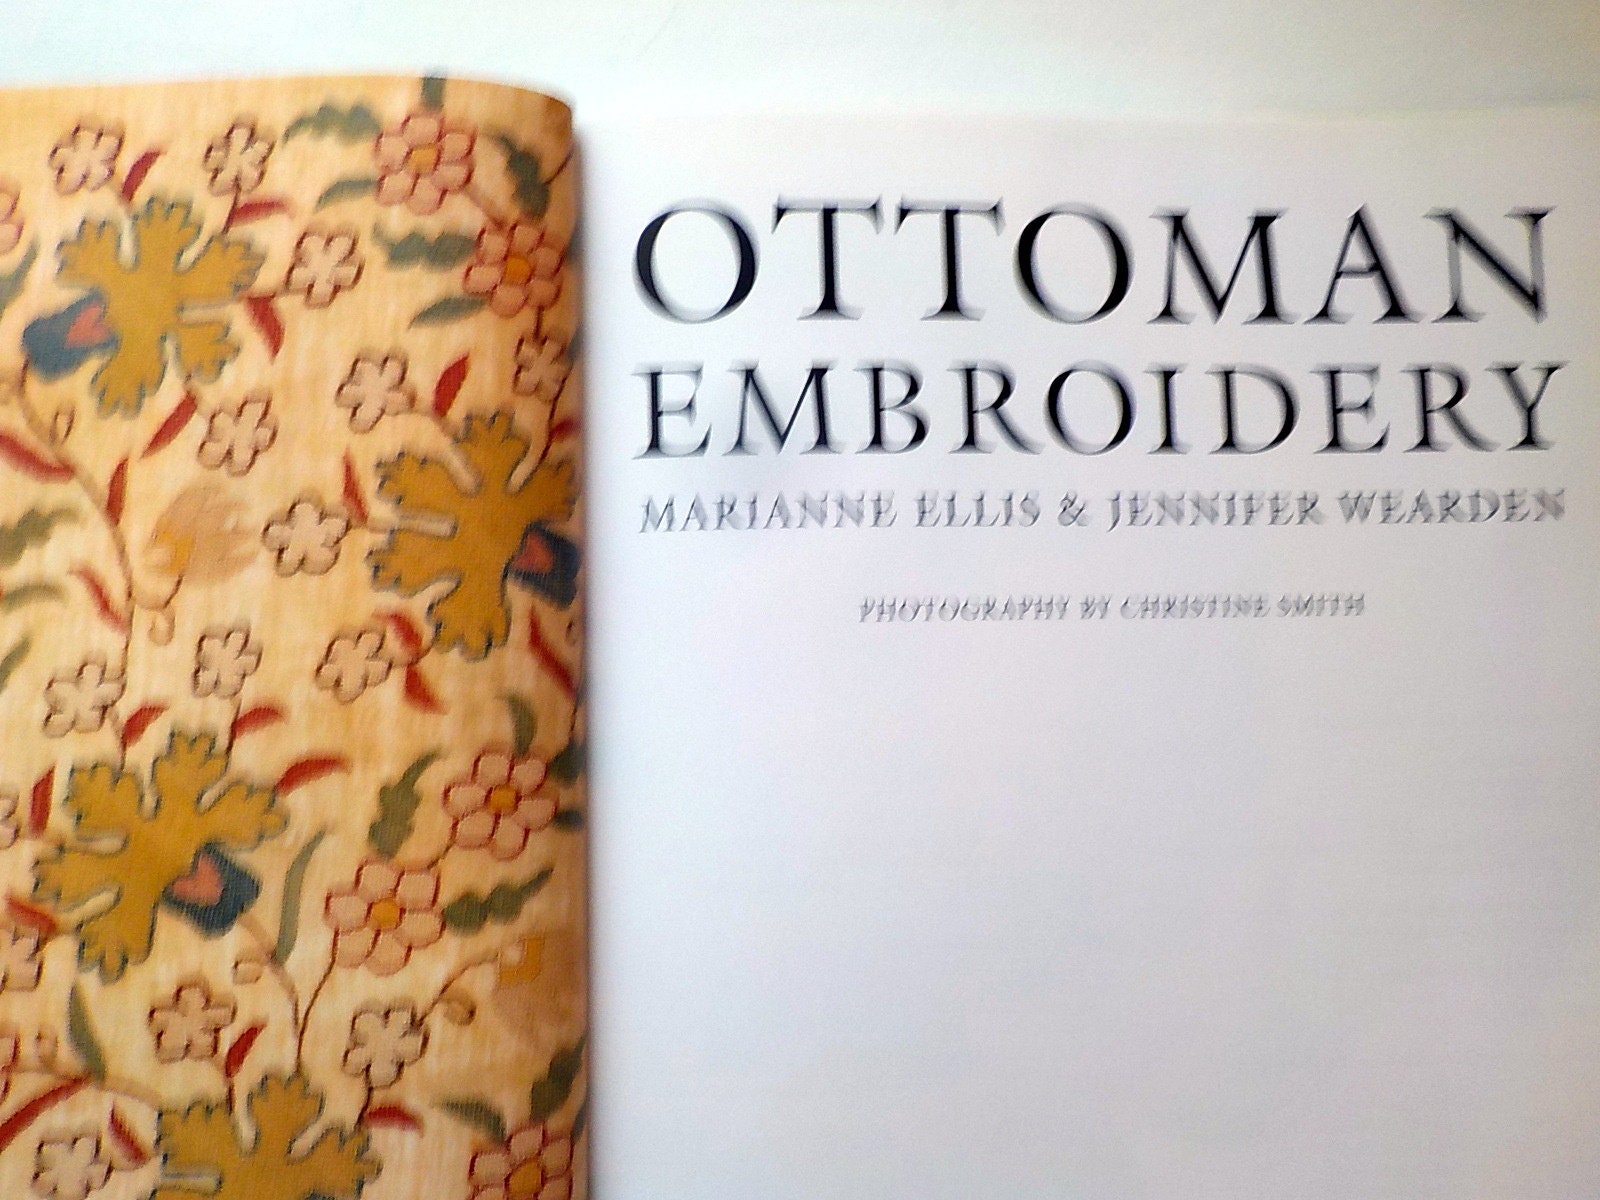 Ottoman Embroidery, Marianne Ellis, Jennifer Wearden